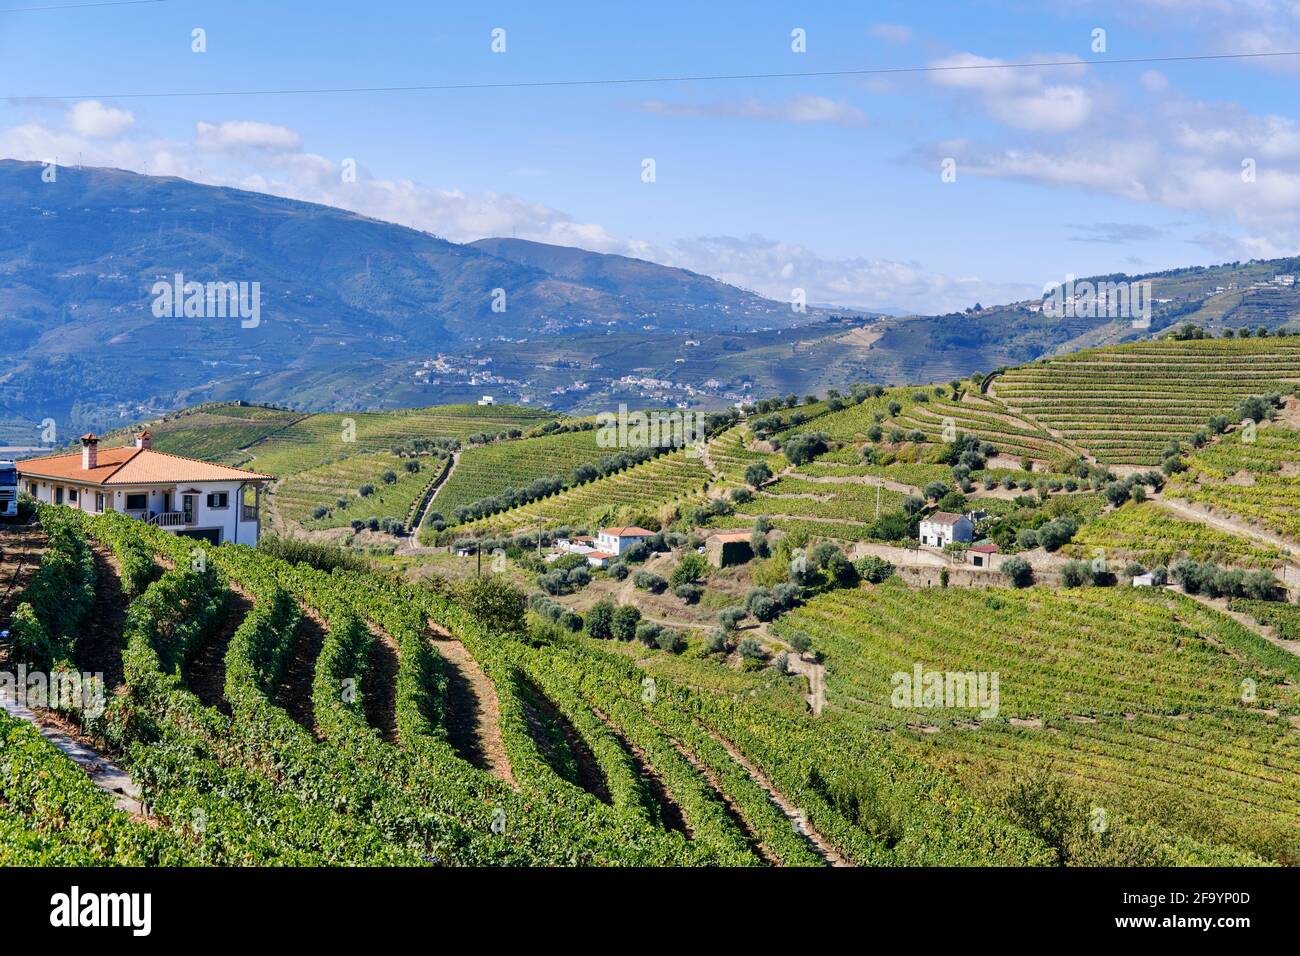 The terraced vineyards at Peso da Regua, Alto Douro, a Unesco World heritage site. Portugal Stock Photo